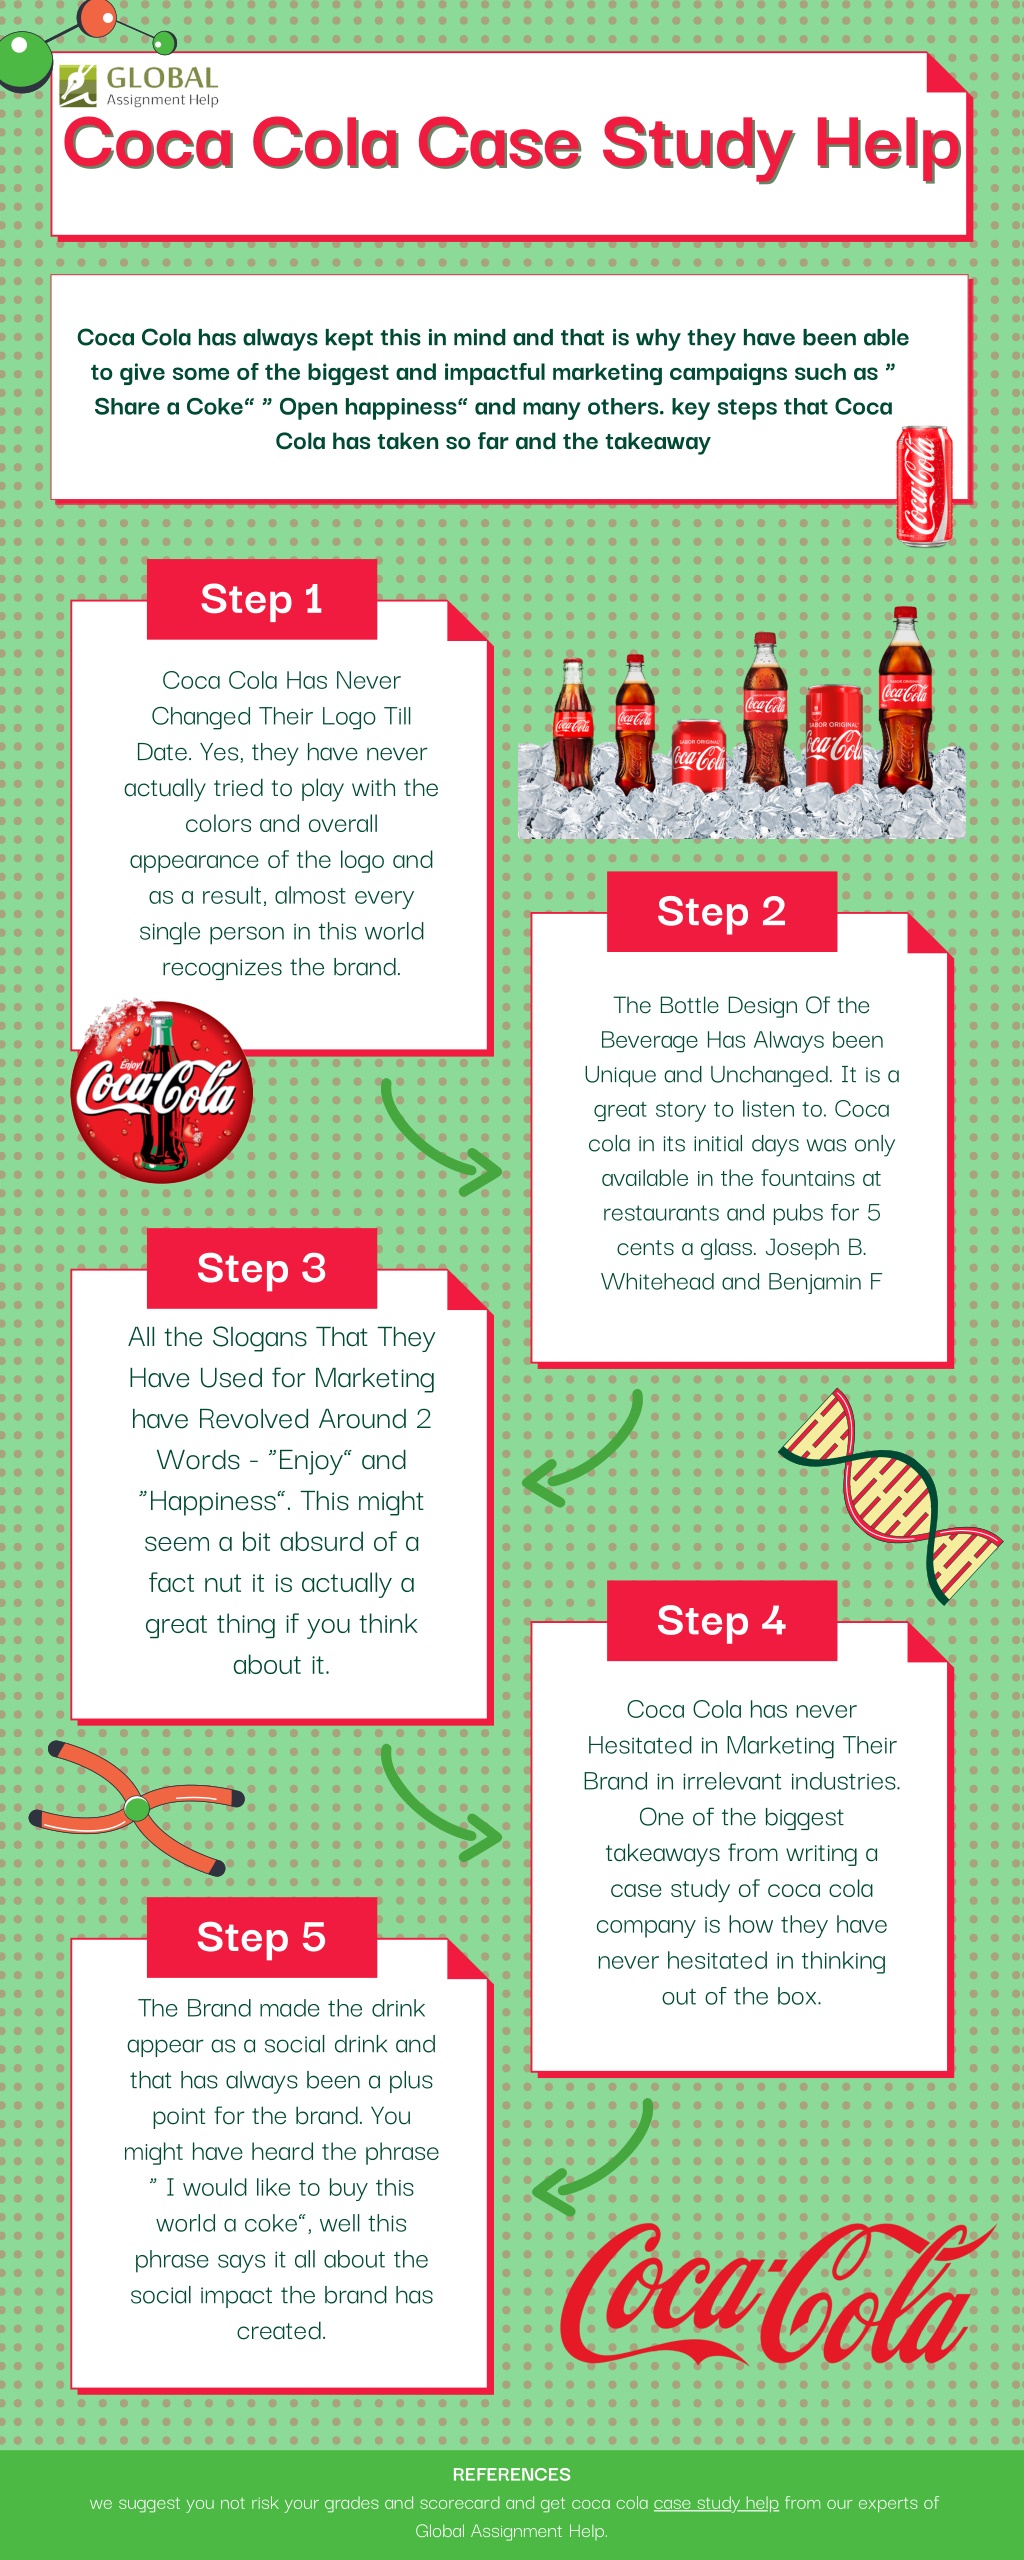 mis case study on coca cola